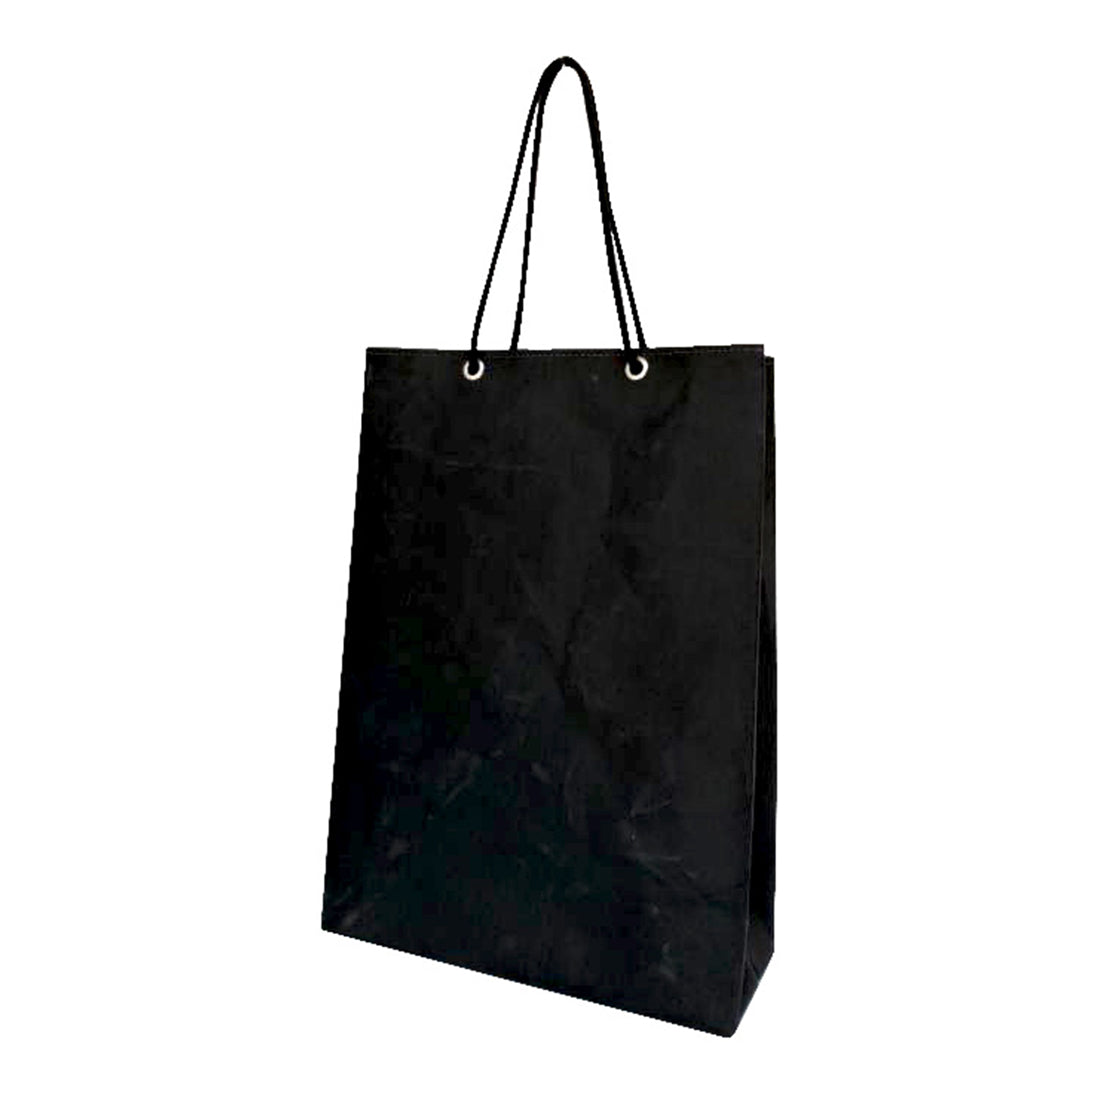 Shopping bag / ショッピングバッグ Mサイズ